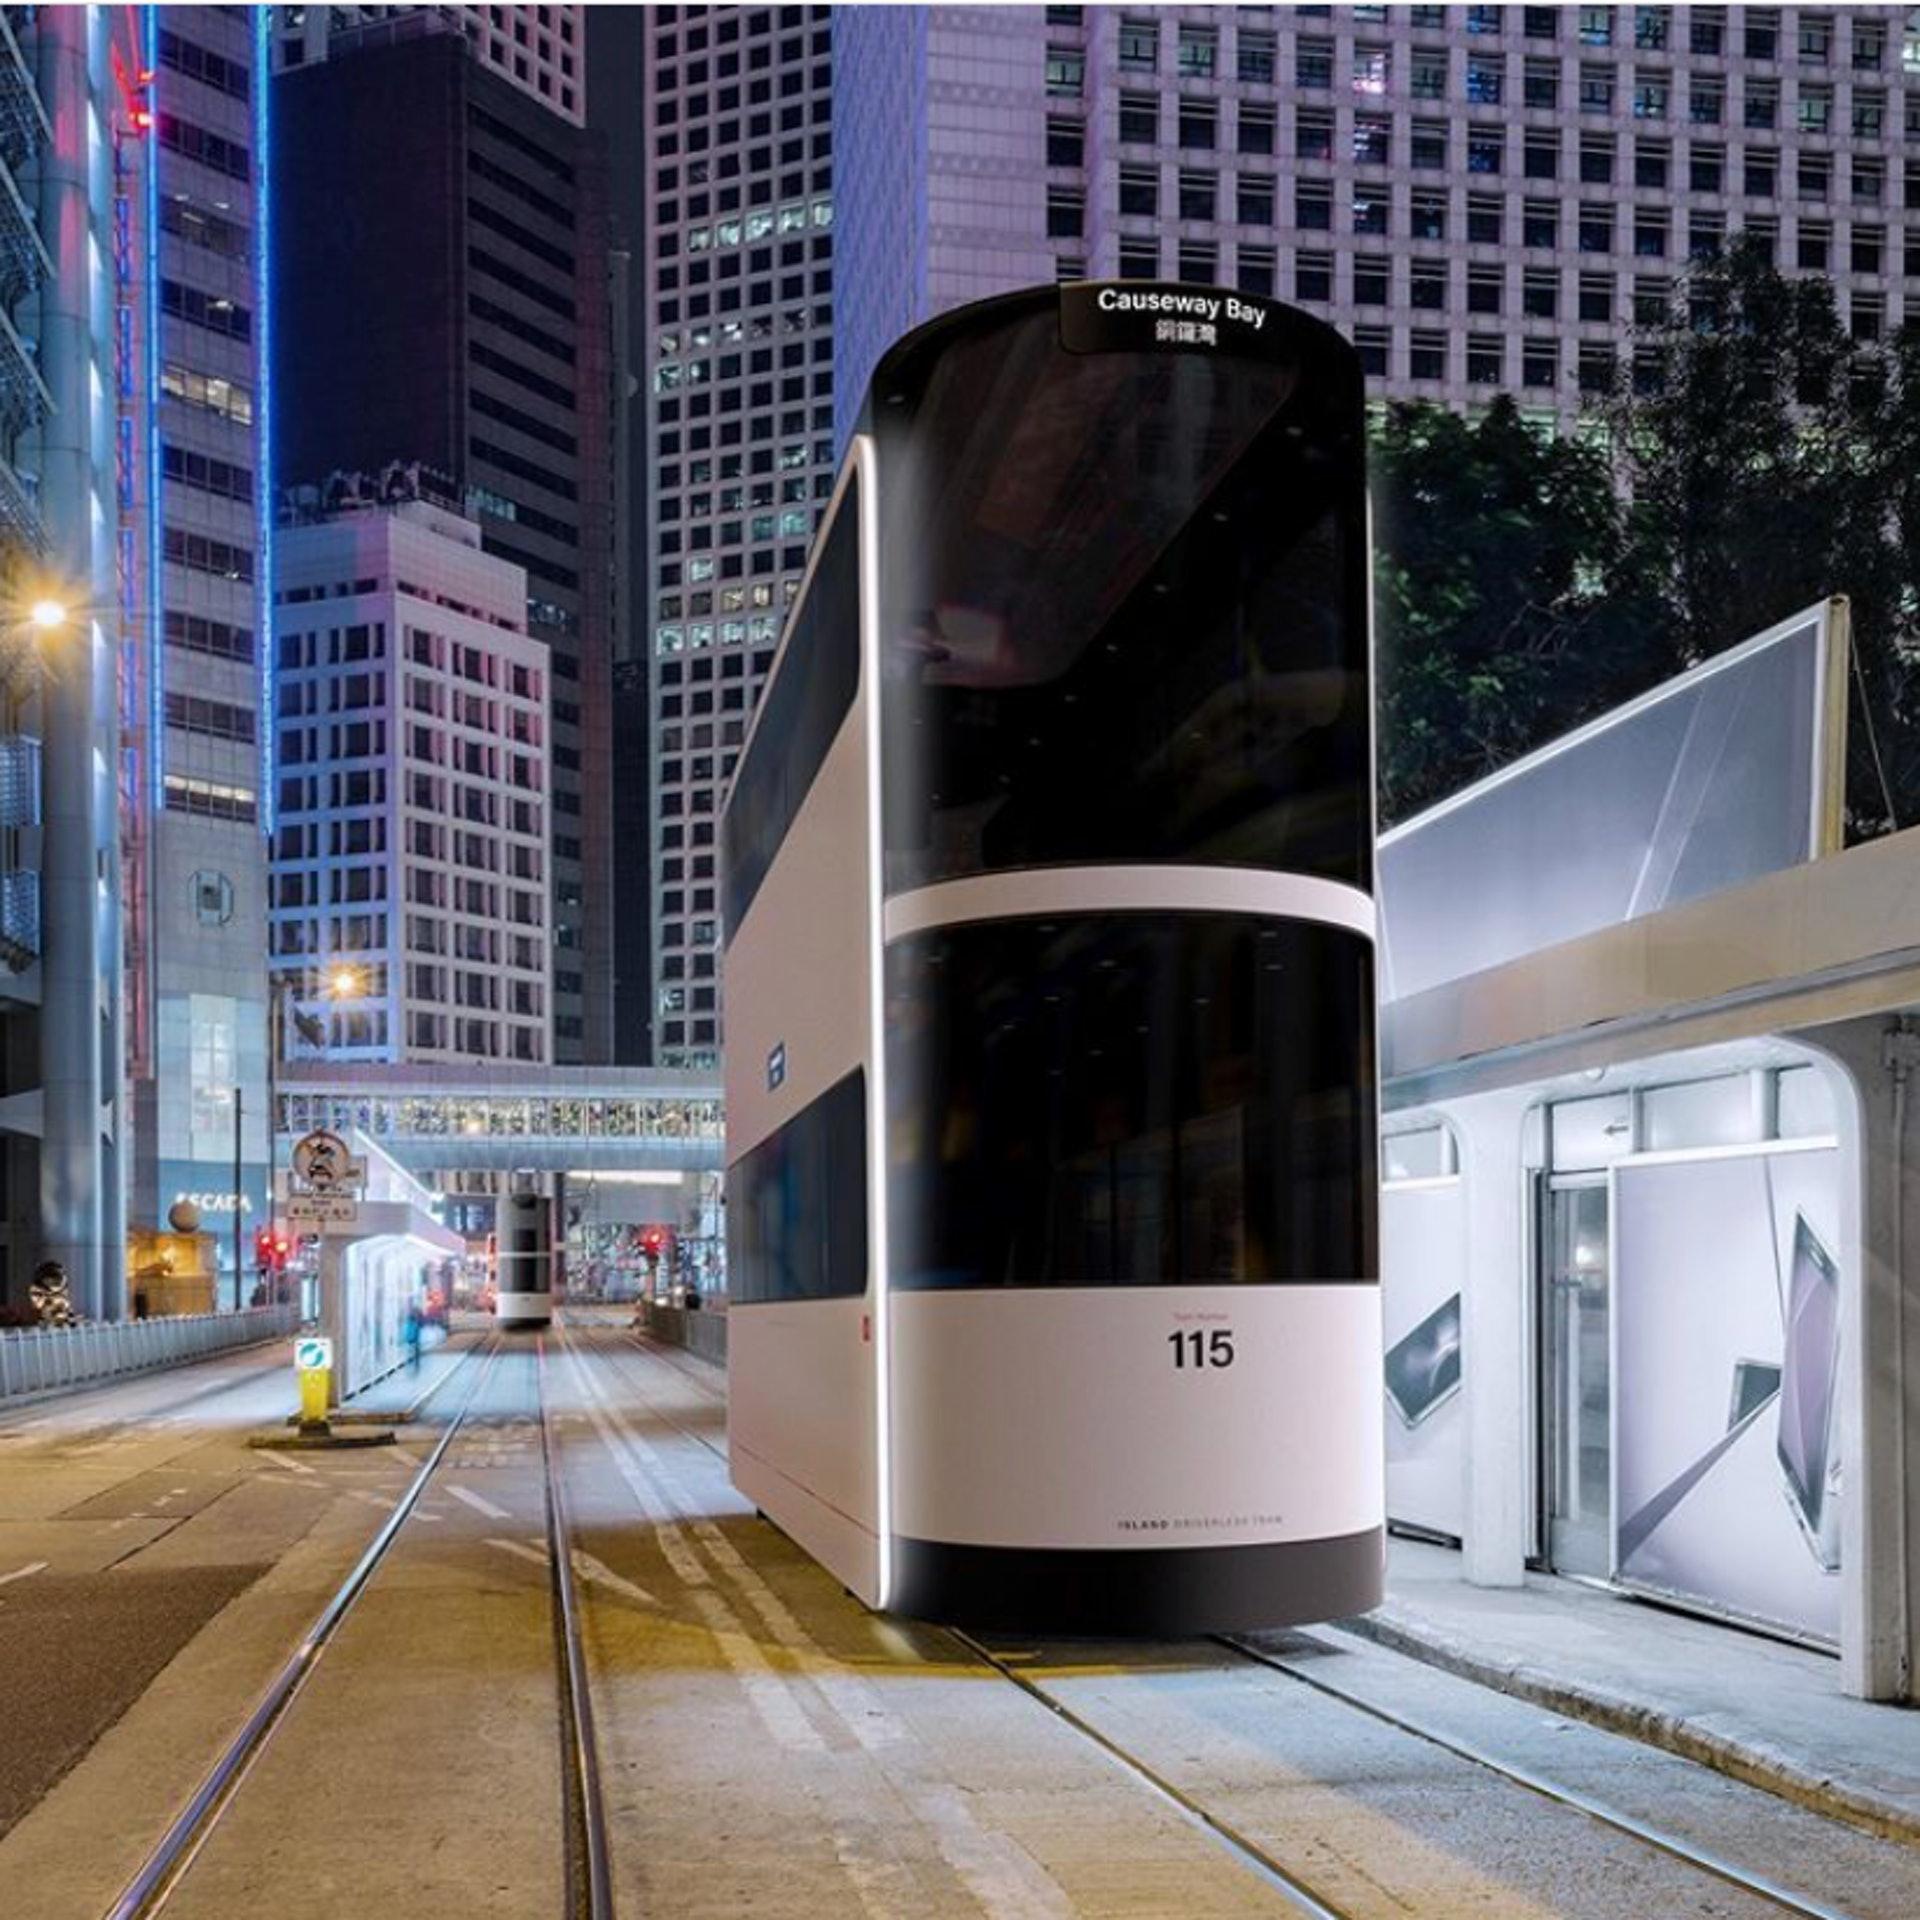 Island: A Driverless Social-Distancing Tram Designed For Hong Kong